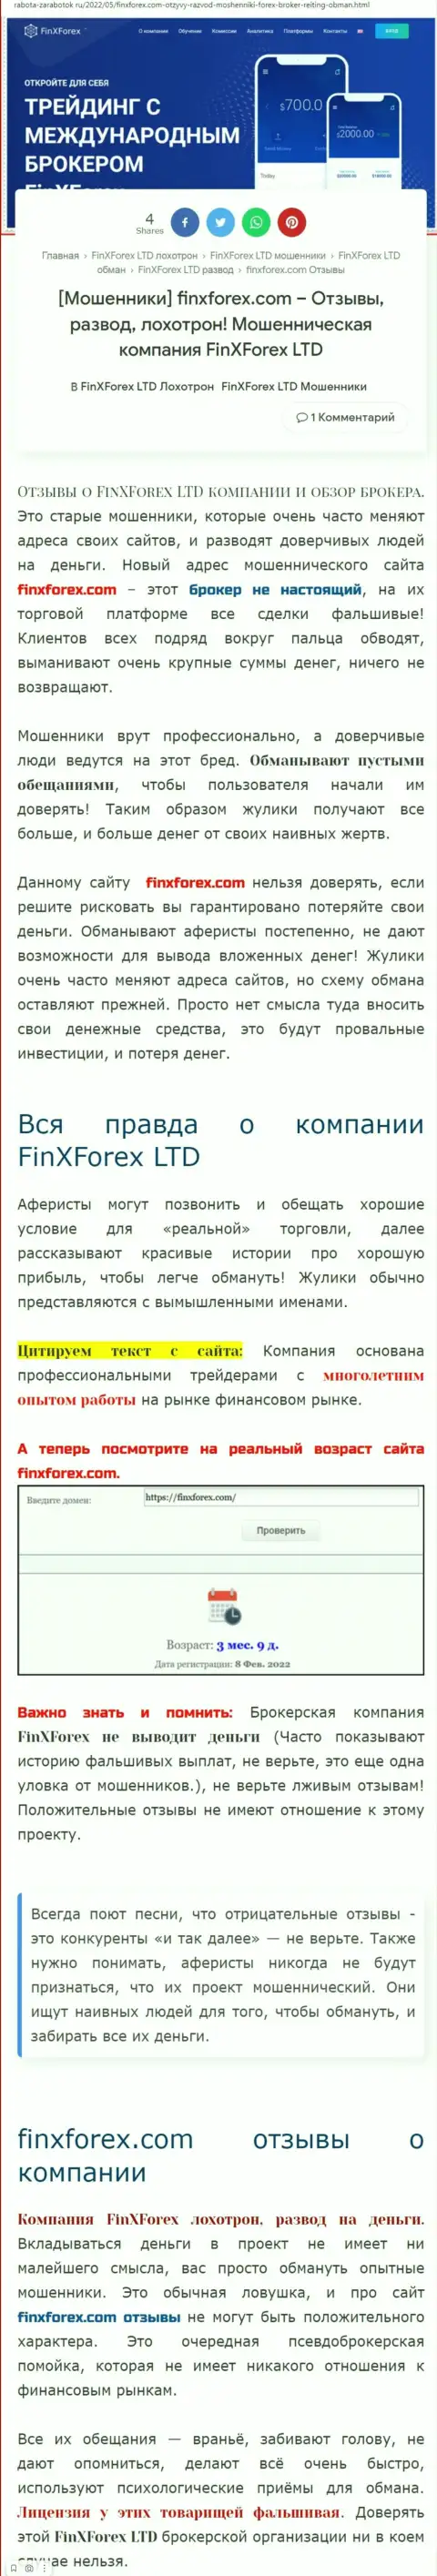 Автор статьи об FinXForex говорит, что в конторе ФинХФорекс мошенничают